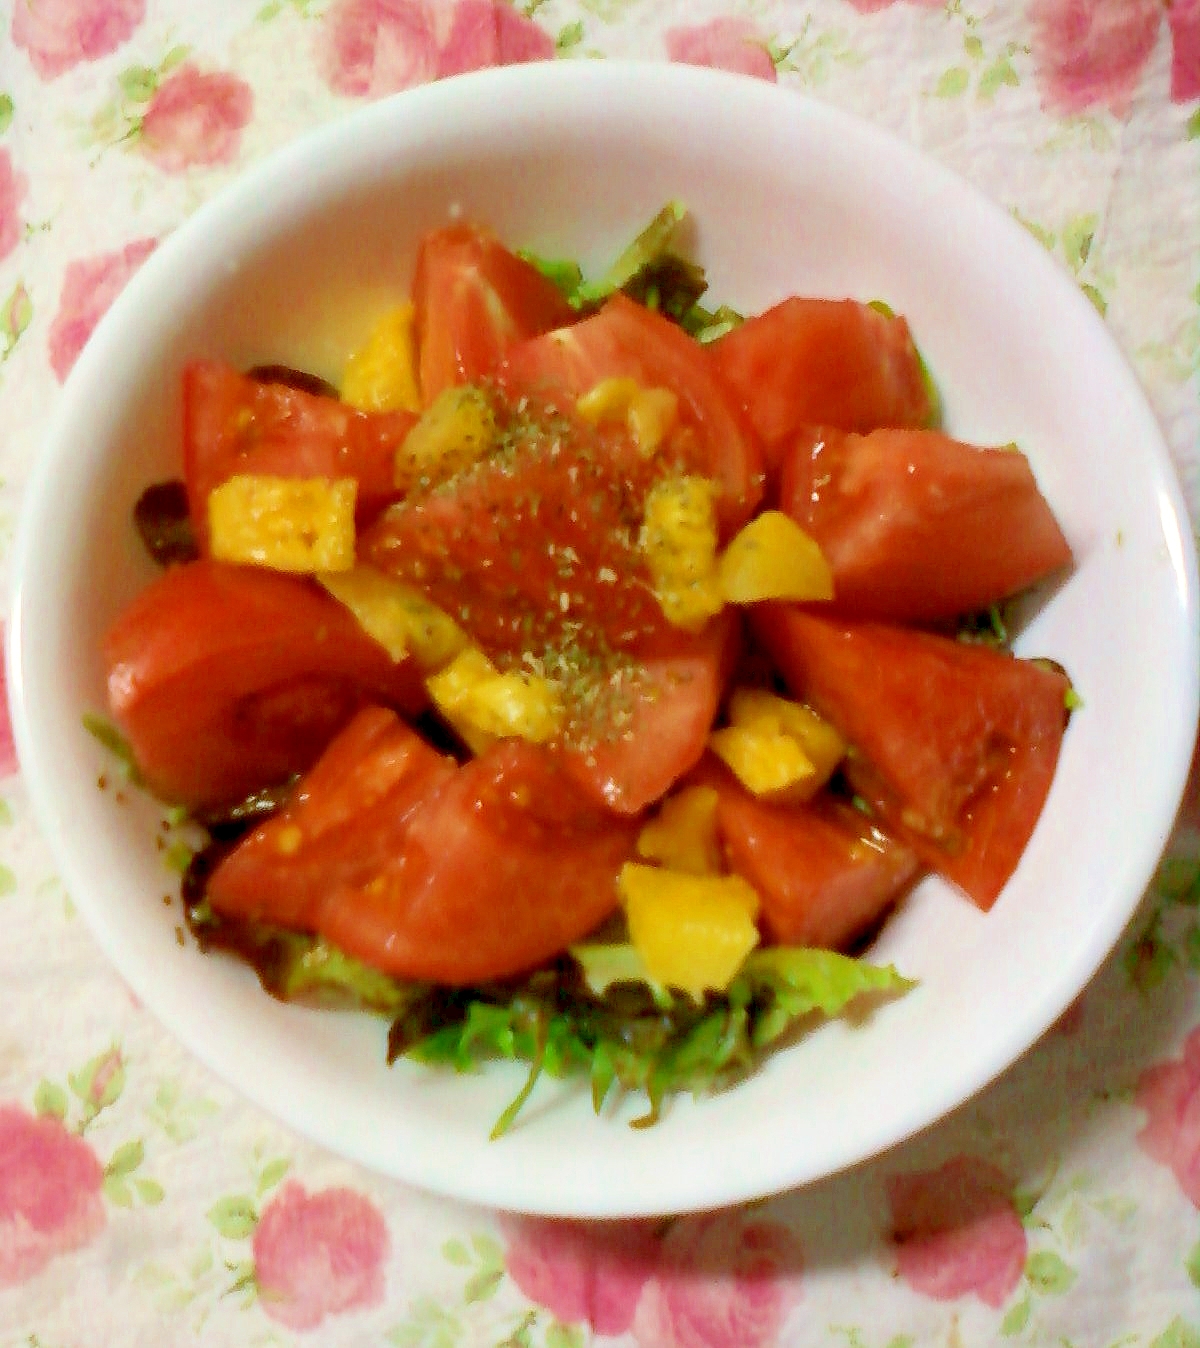 ☆*・紅茶ドレッシングの野菜と果物のサラダ☆*:・